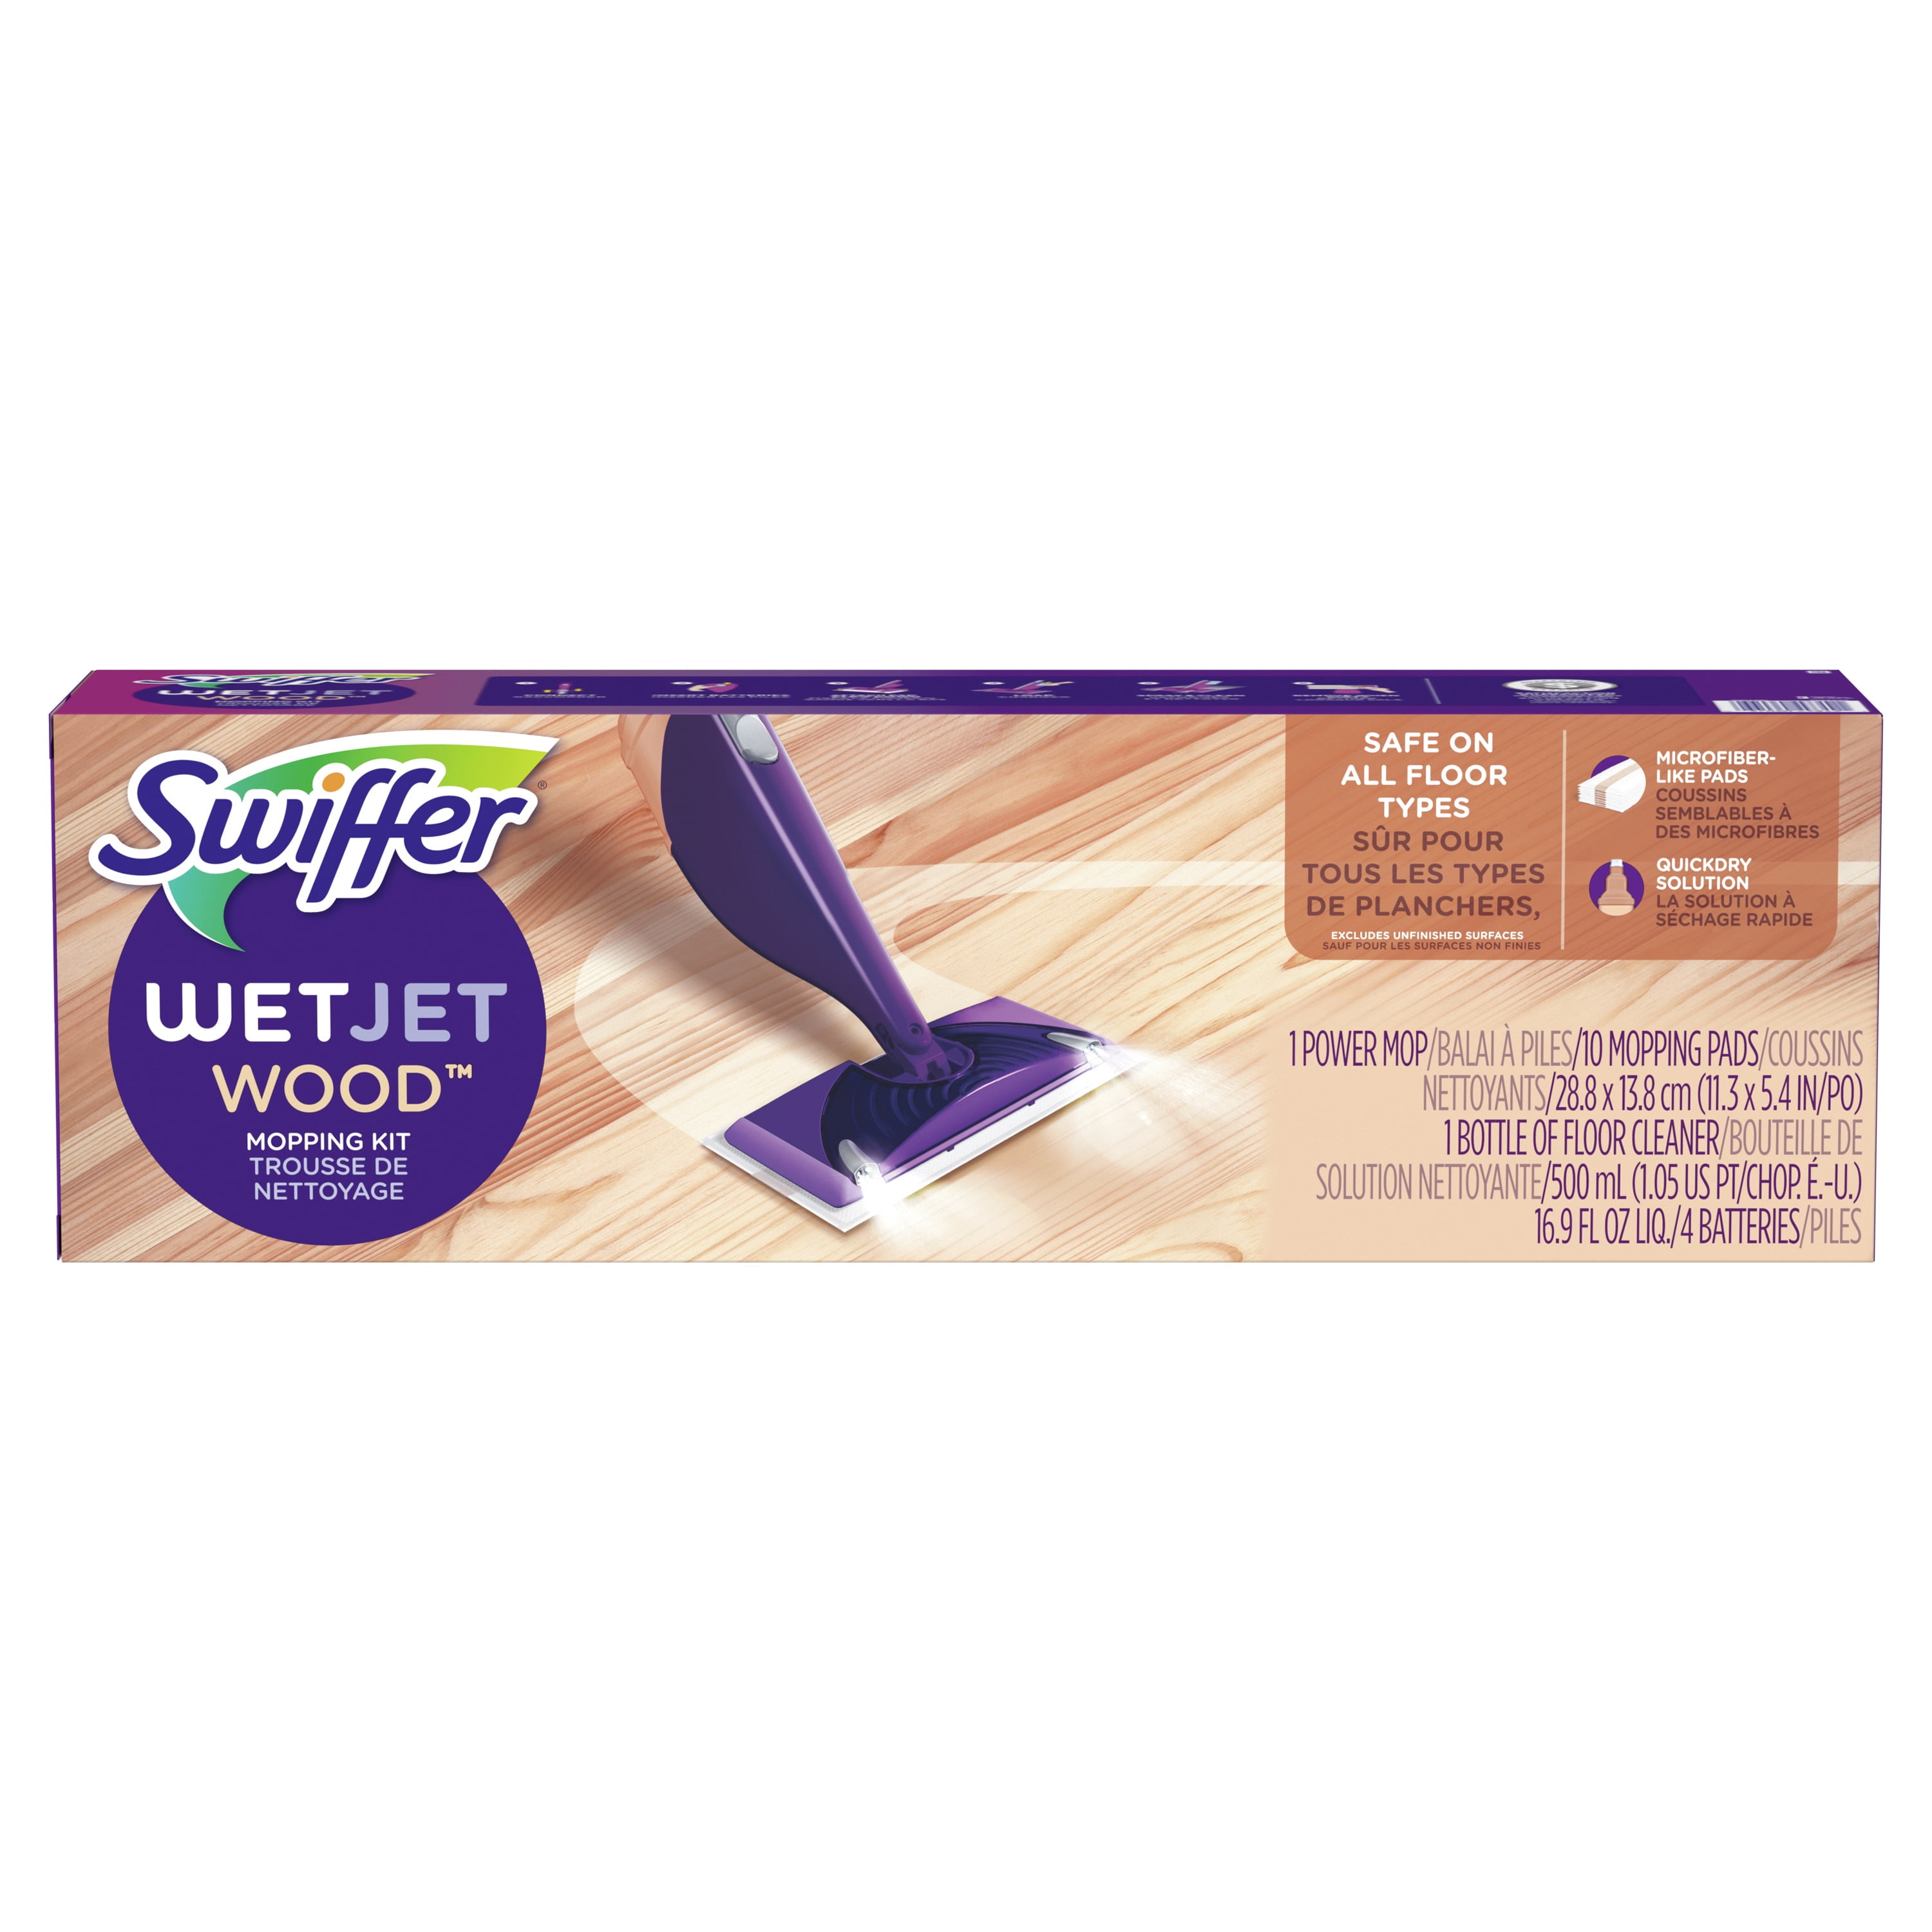 Swiffer WetJet Wood 11.3 in. W Mop Kit